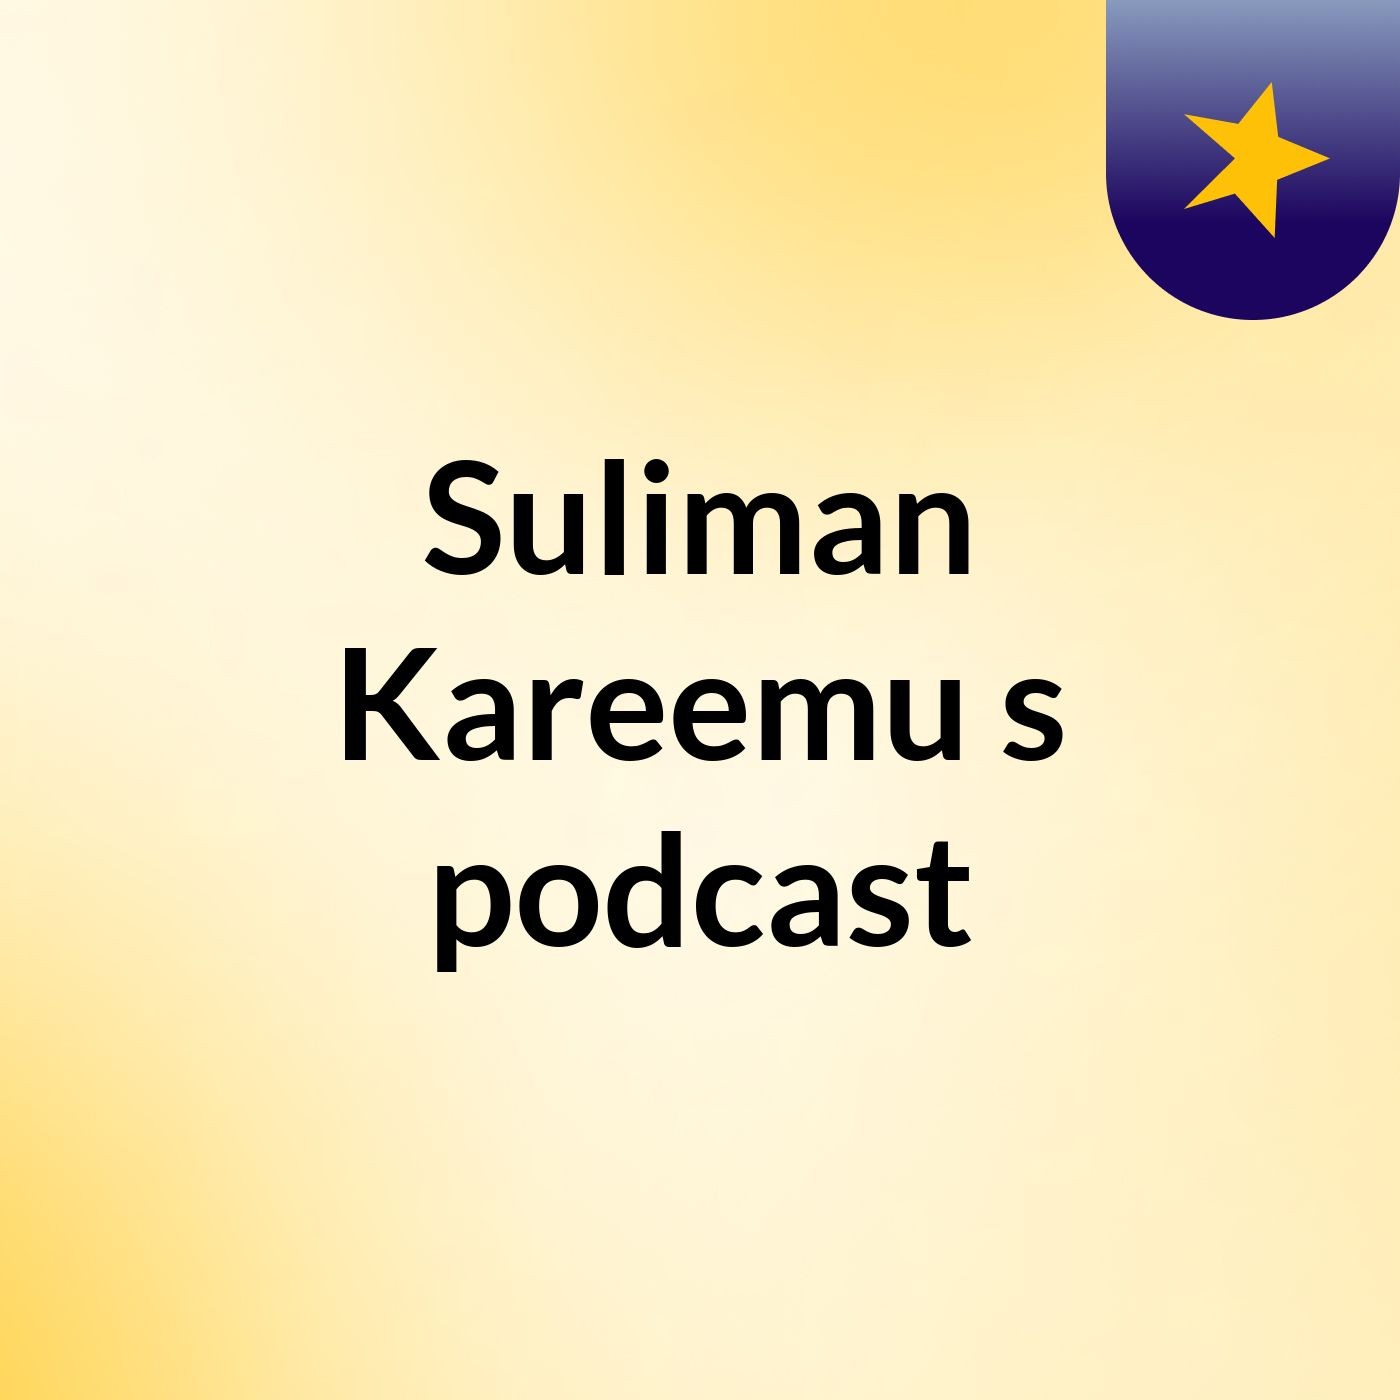 Suliman Kareemu's podcast